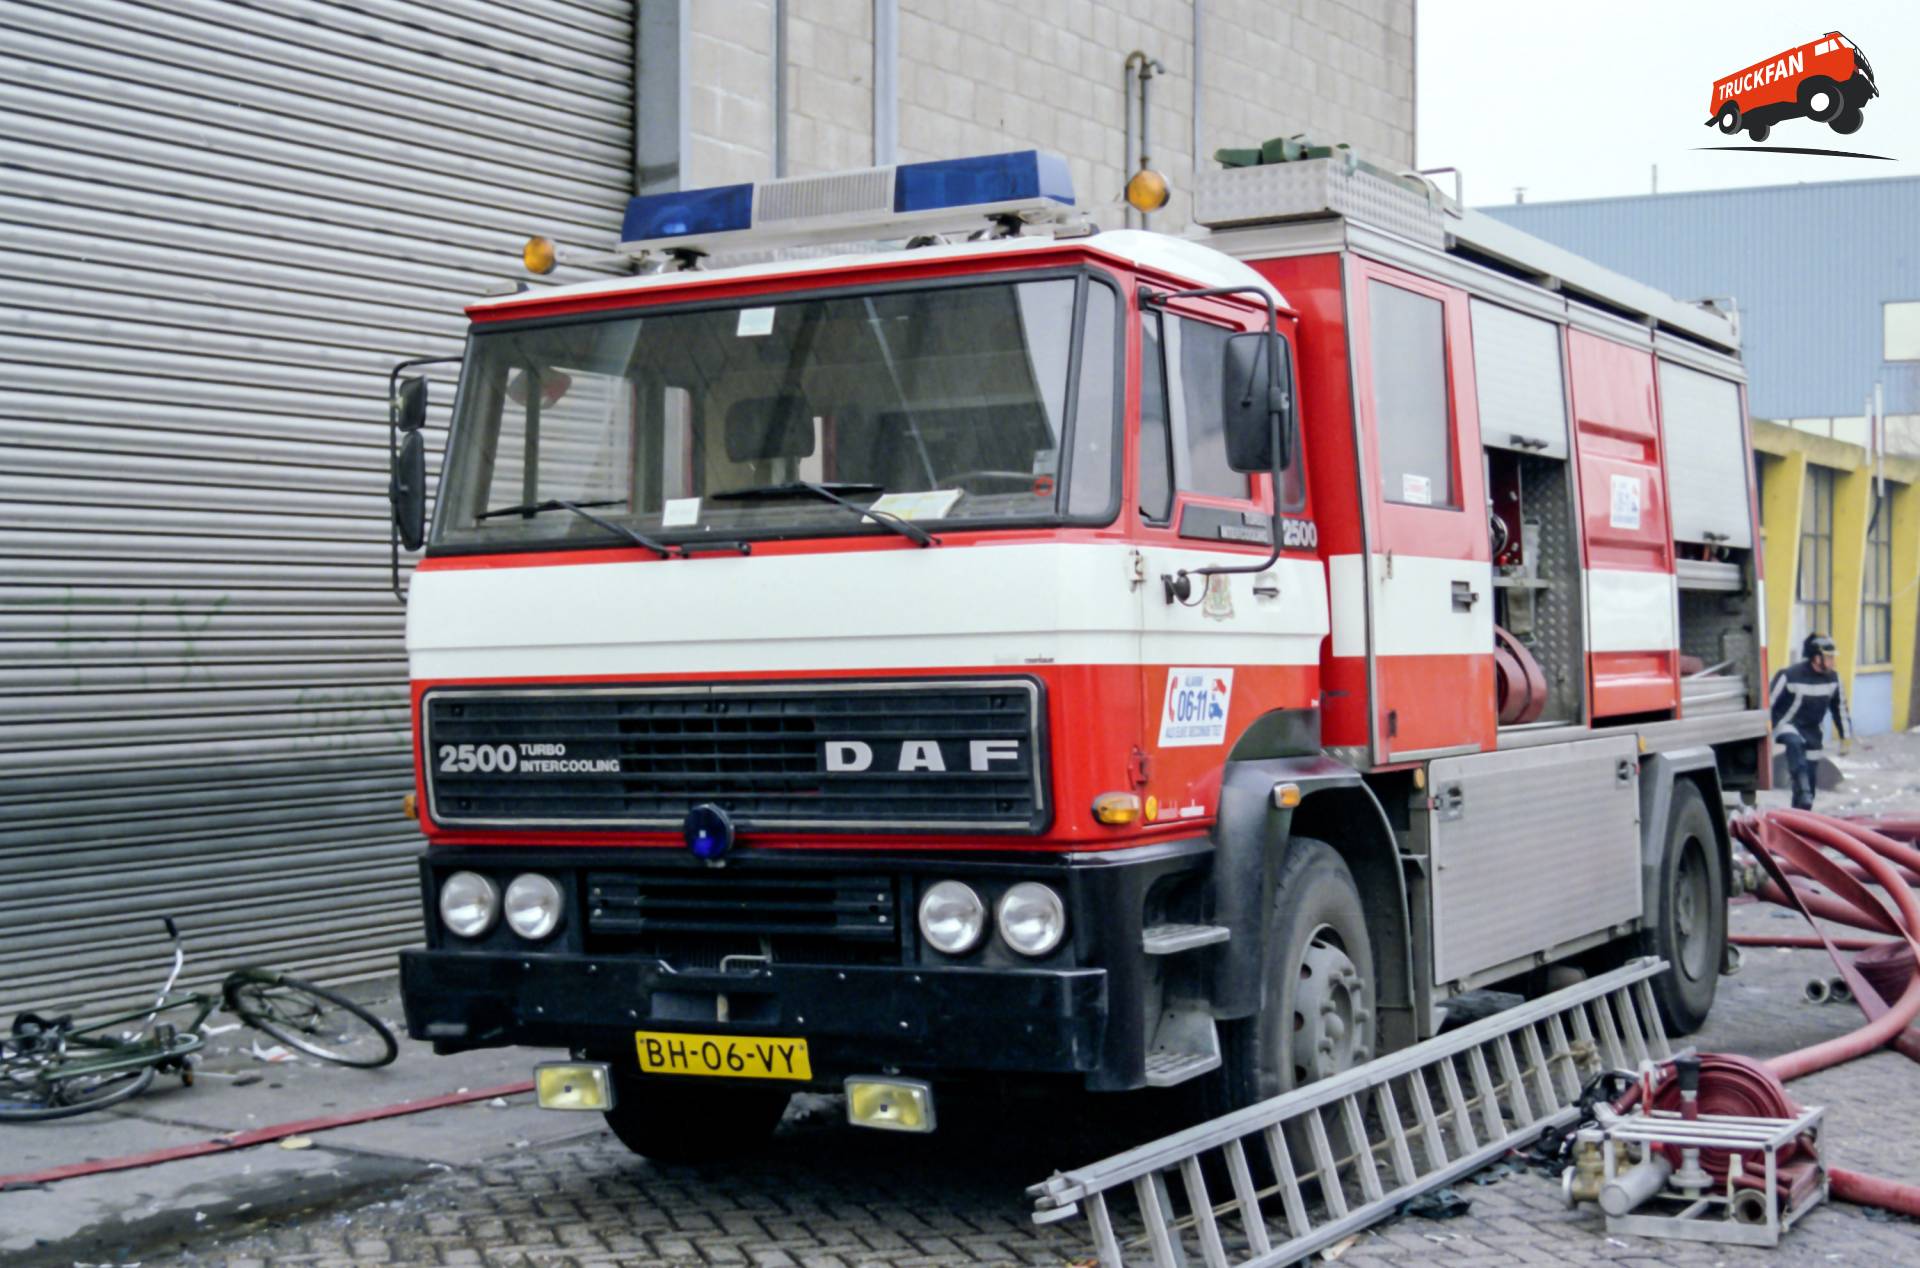 DAF 2500